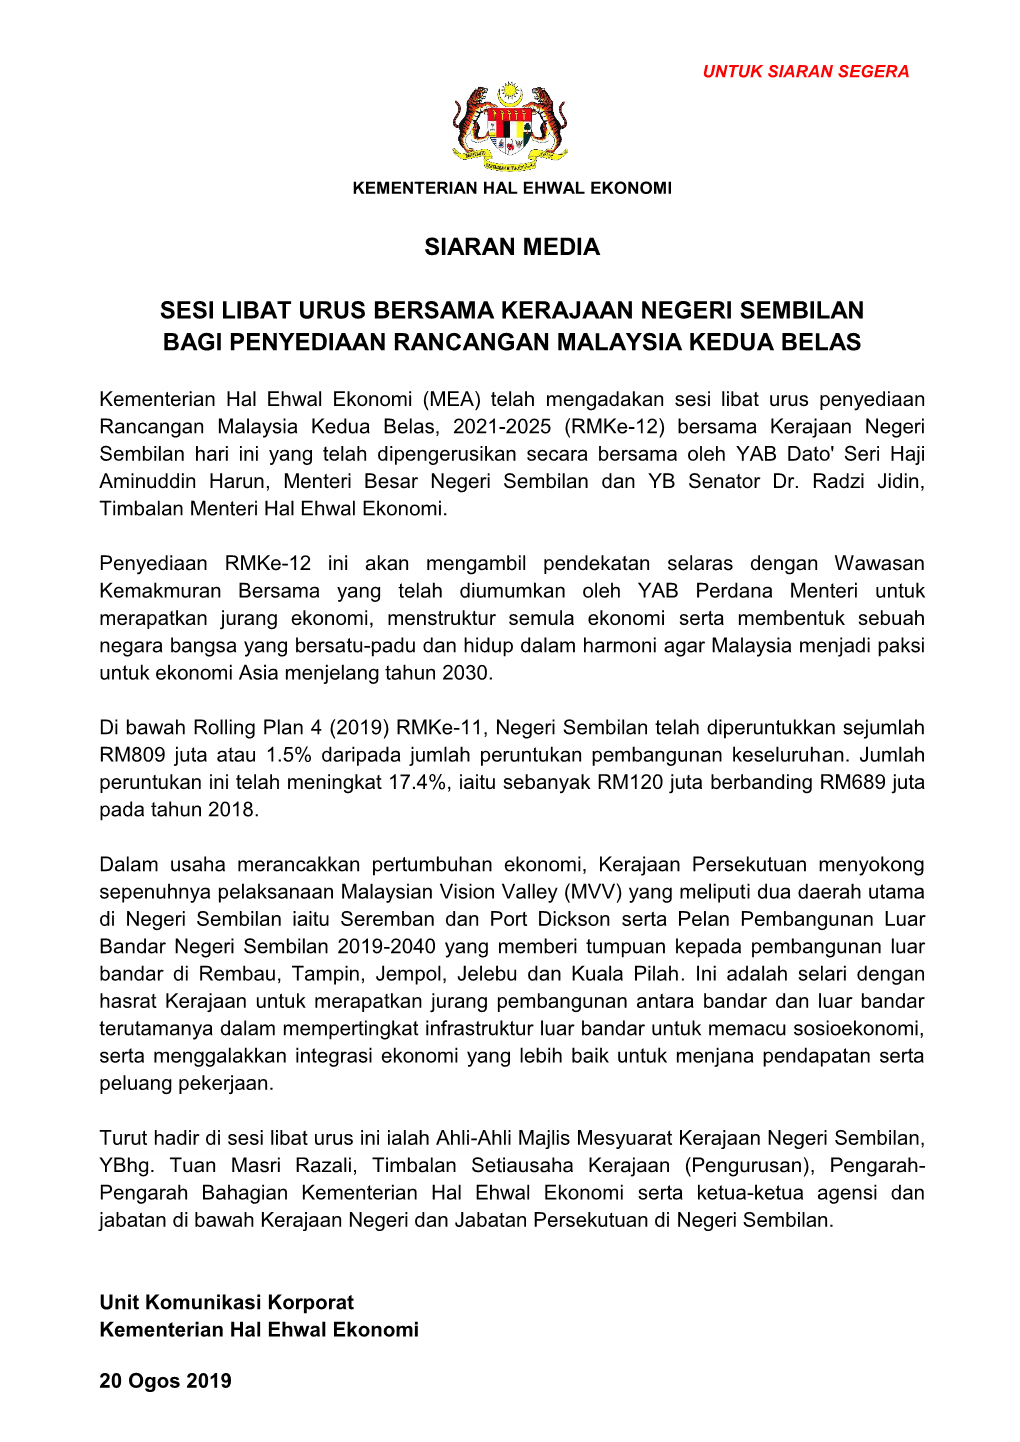 Siaran Media Sesi Libat Urus Bersama Kerajaan Negeri Sembilan Bagi Penyediaan Rancangan Malaysia Kedua Belas